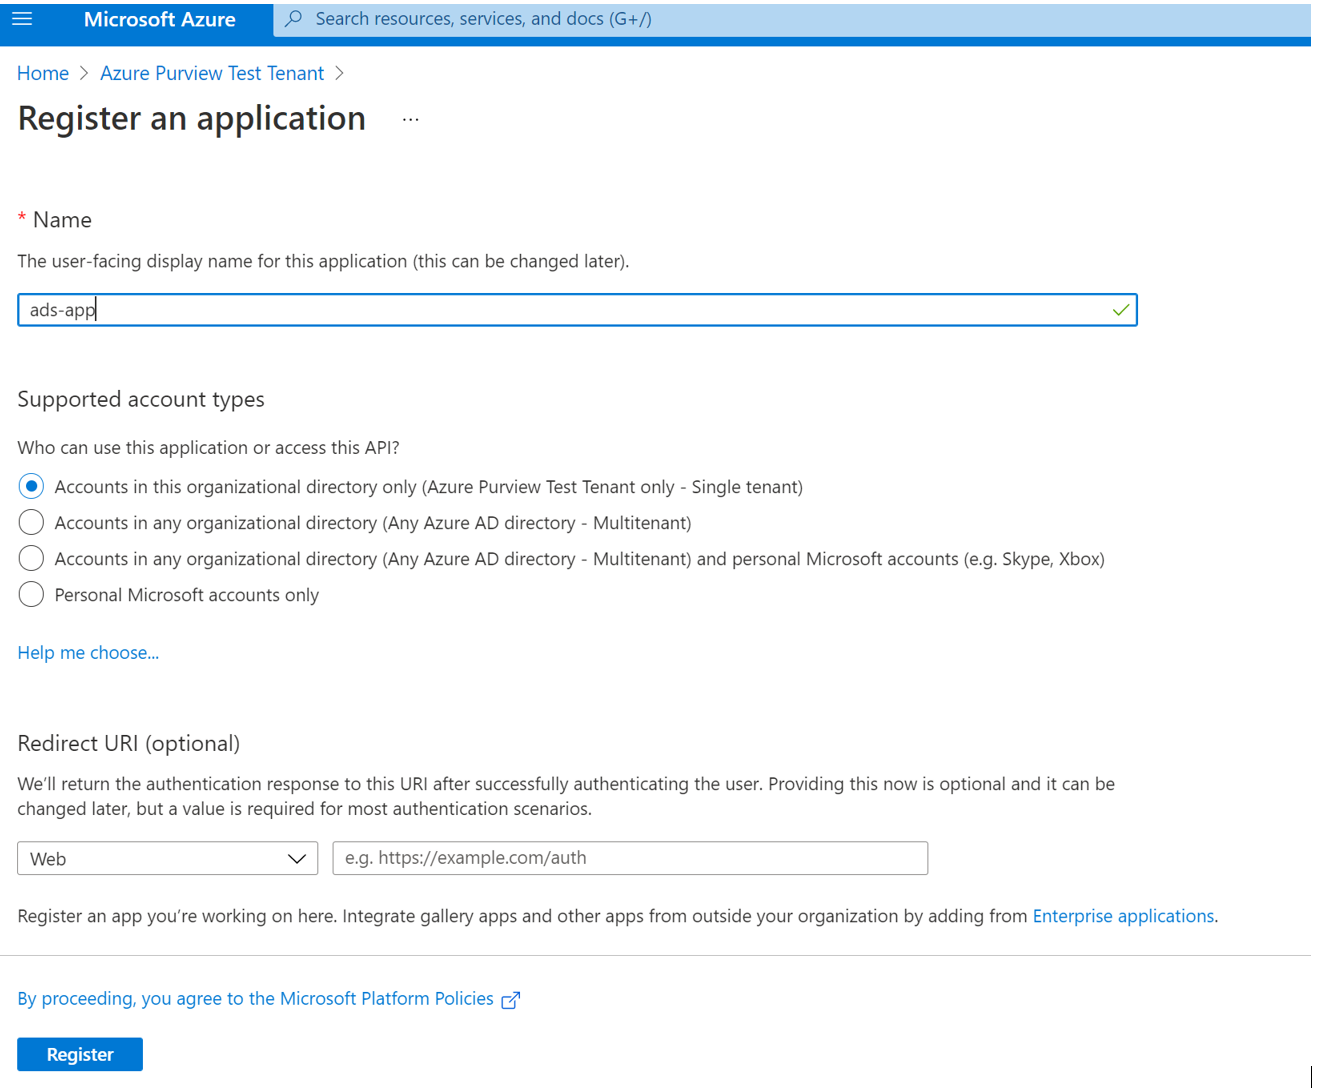 Снимок экрана: сведения о регистрации нового приложения.